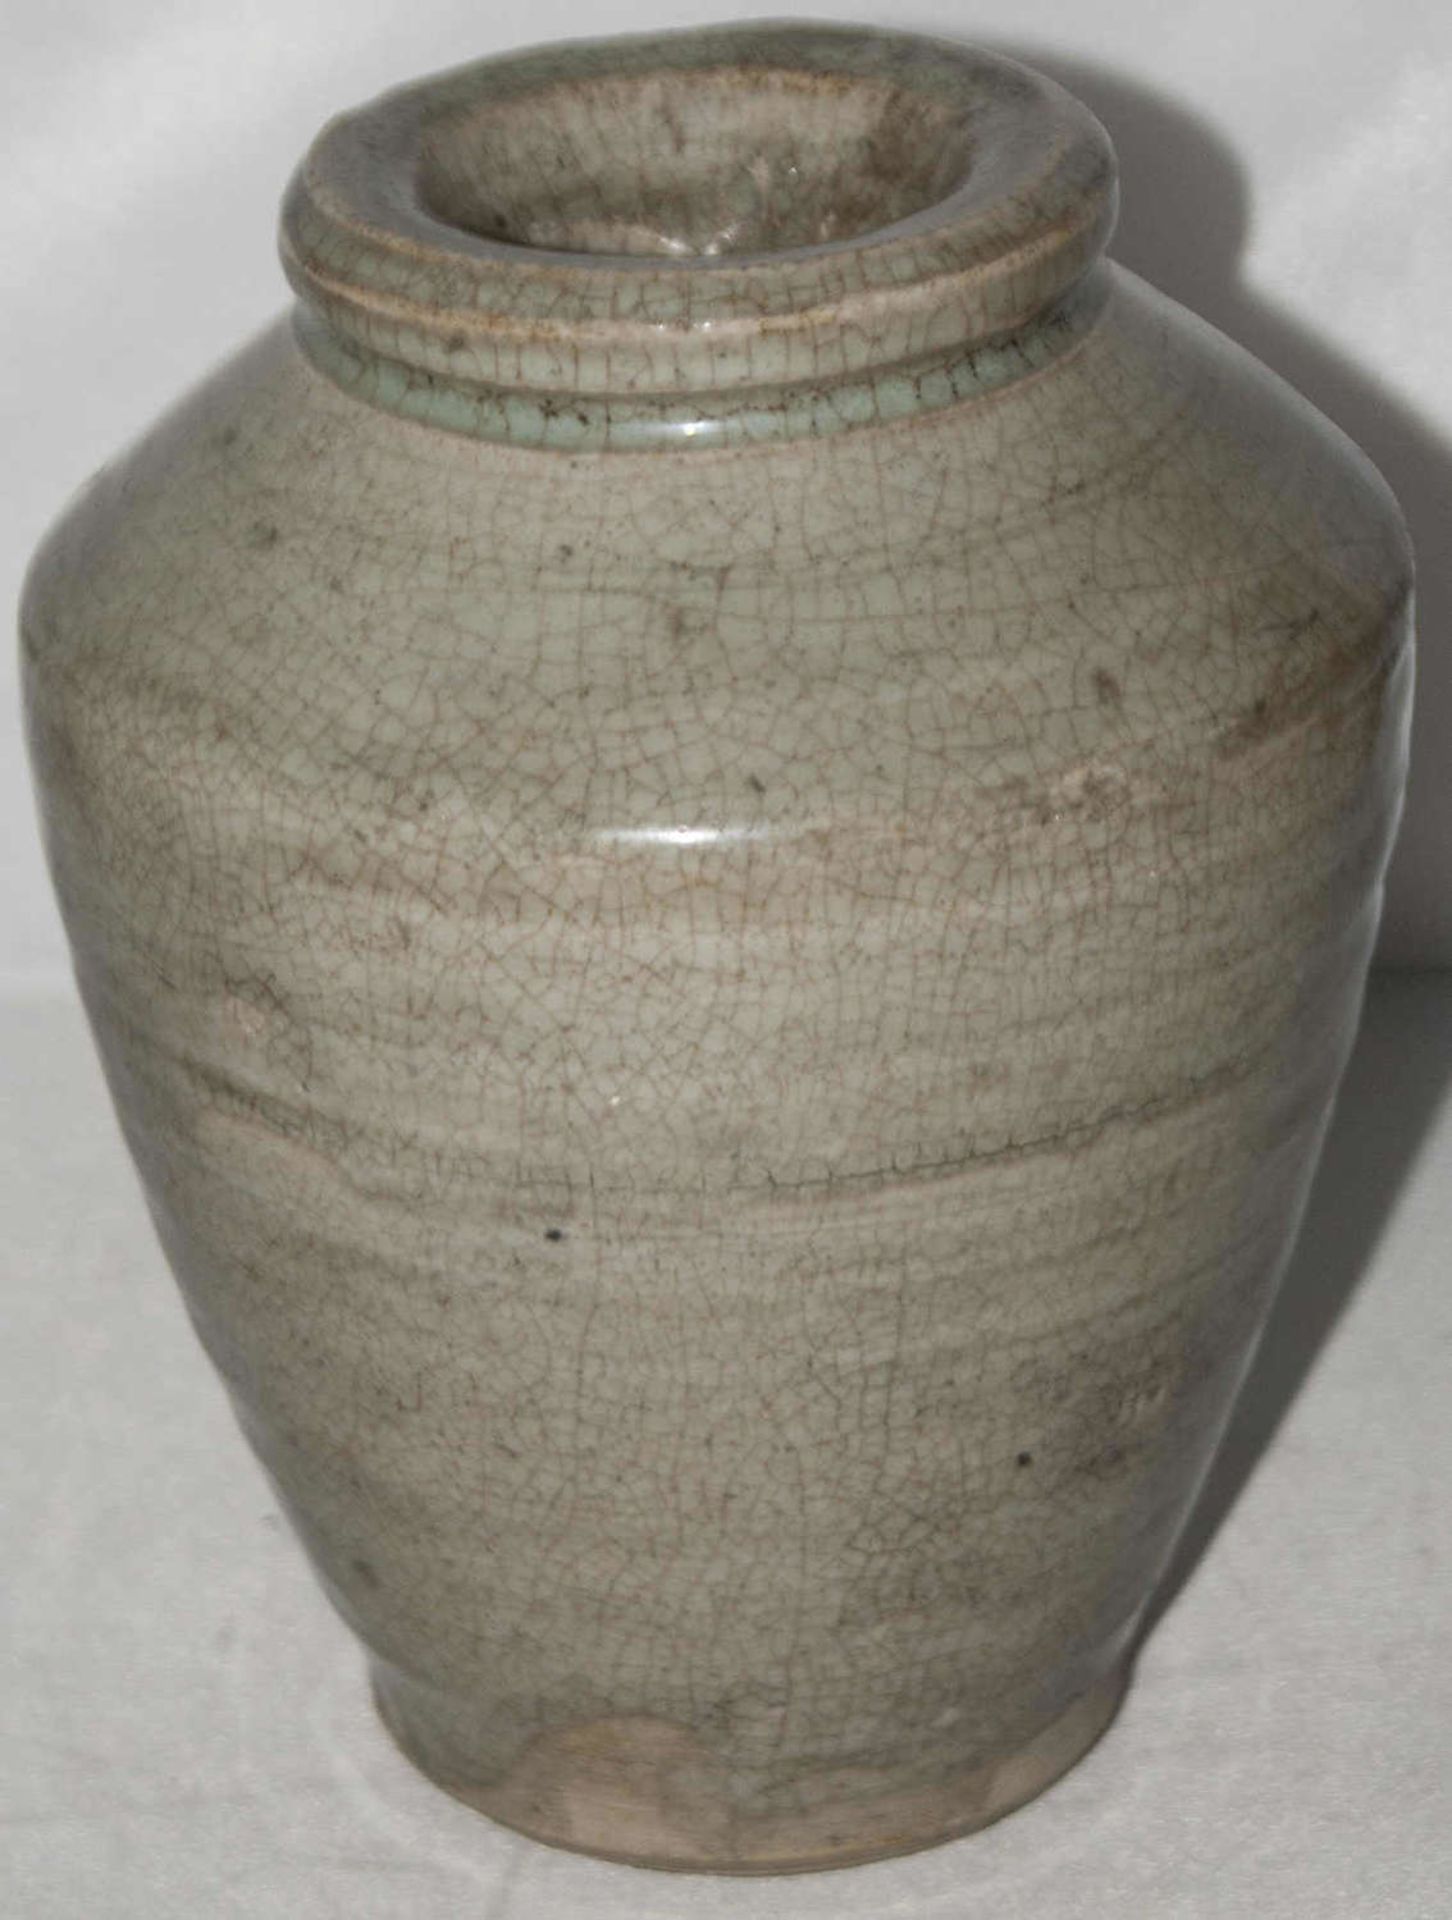 Southern Song Dynastie, 1127-1279. China Stone Vase in sehr guter Erhaltung, aus alter Sammlung.